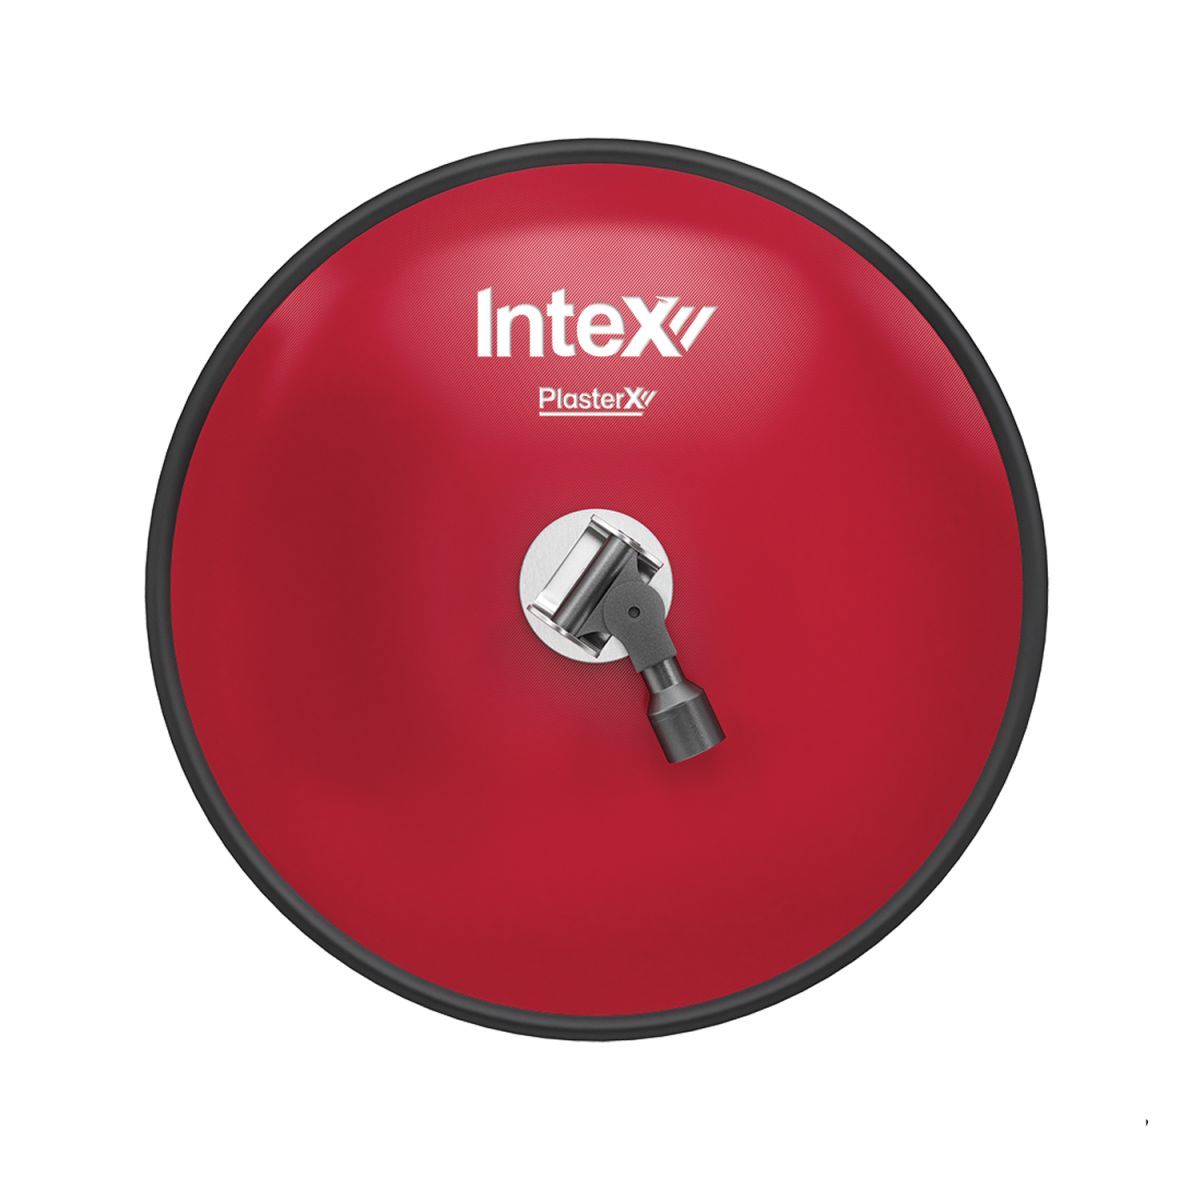 Intex PlasterX VorteX® Round Pole Sander Head
